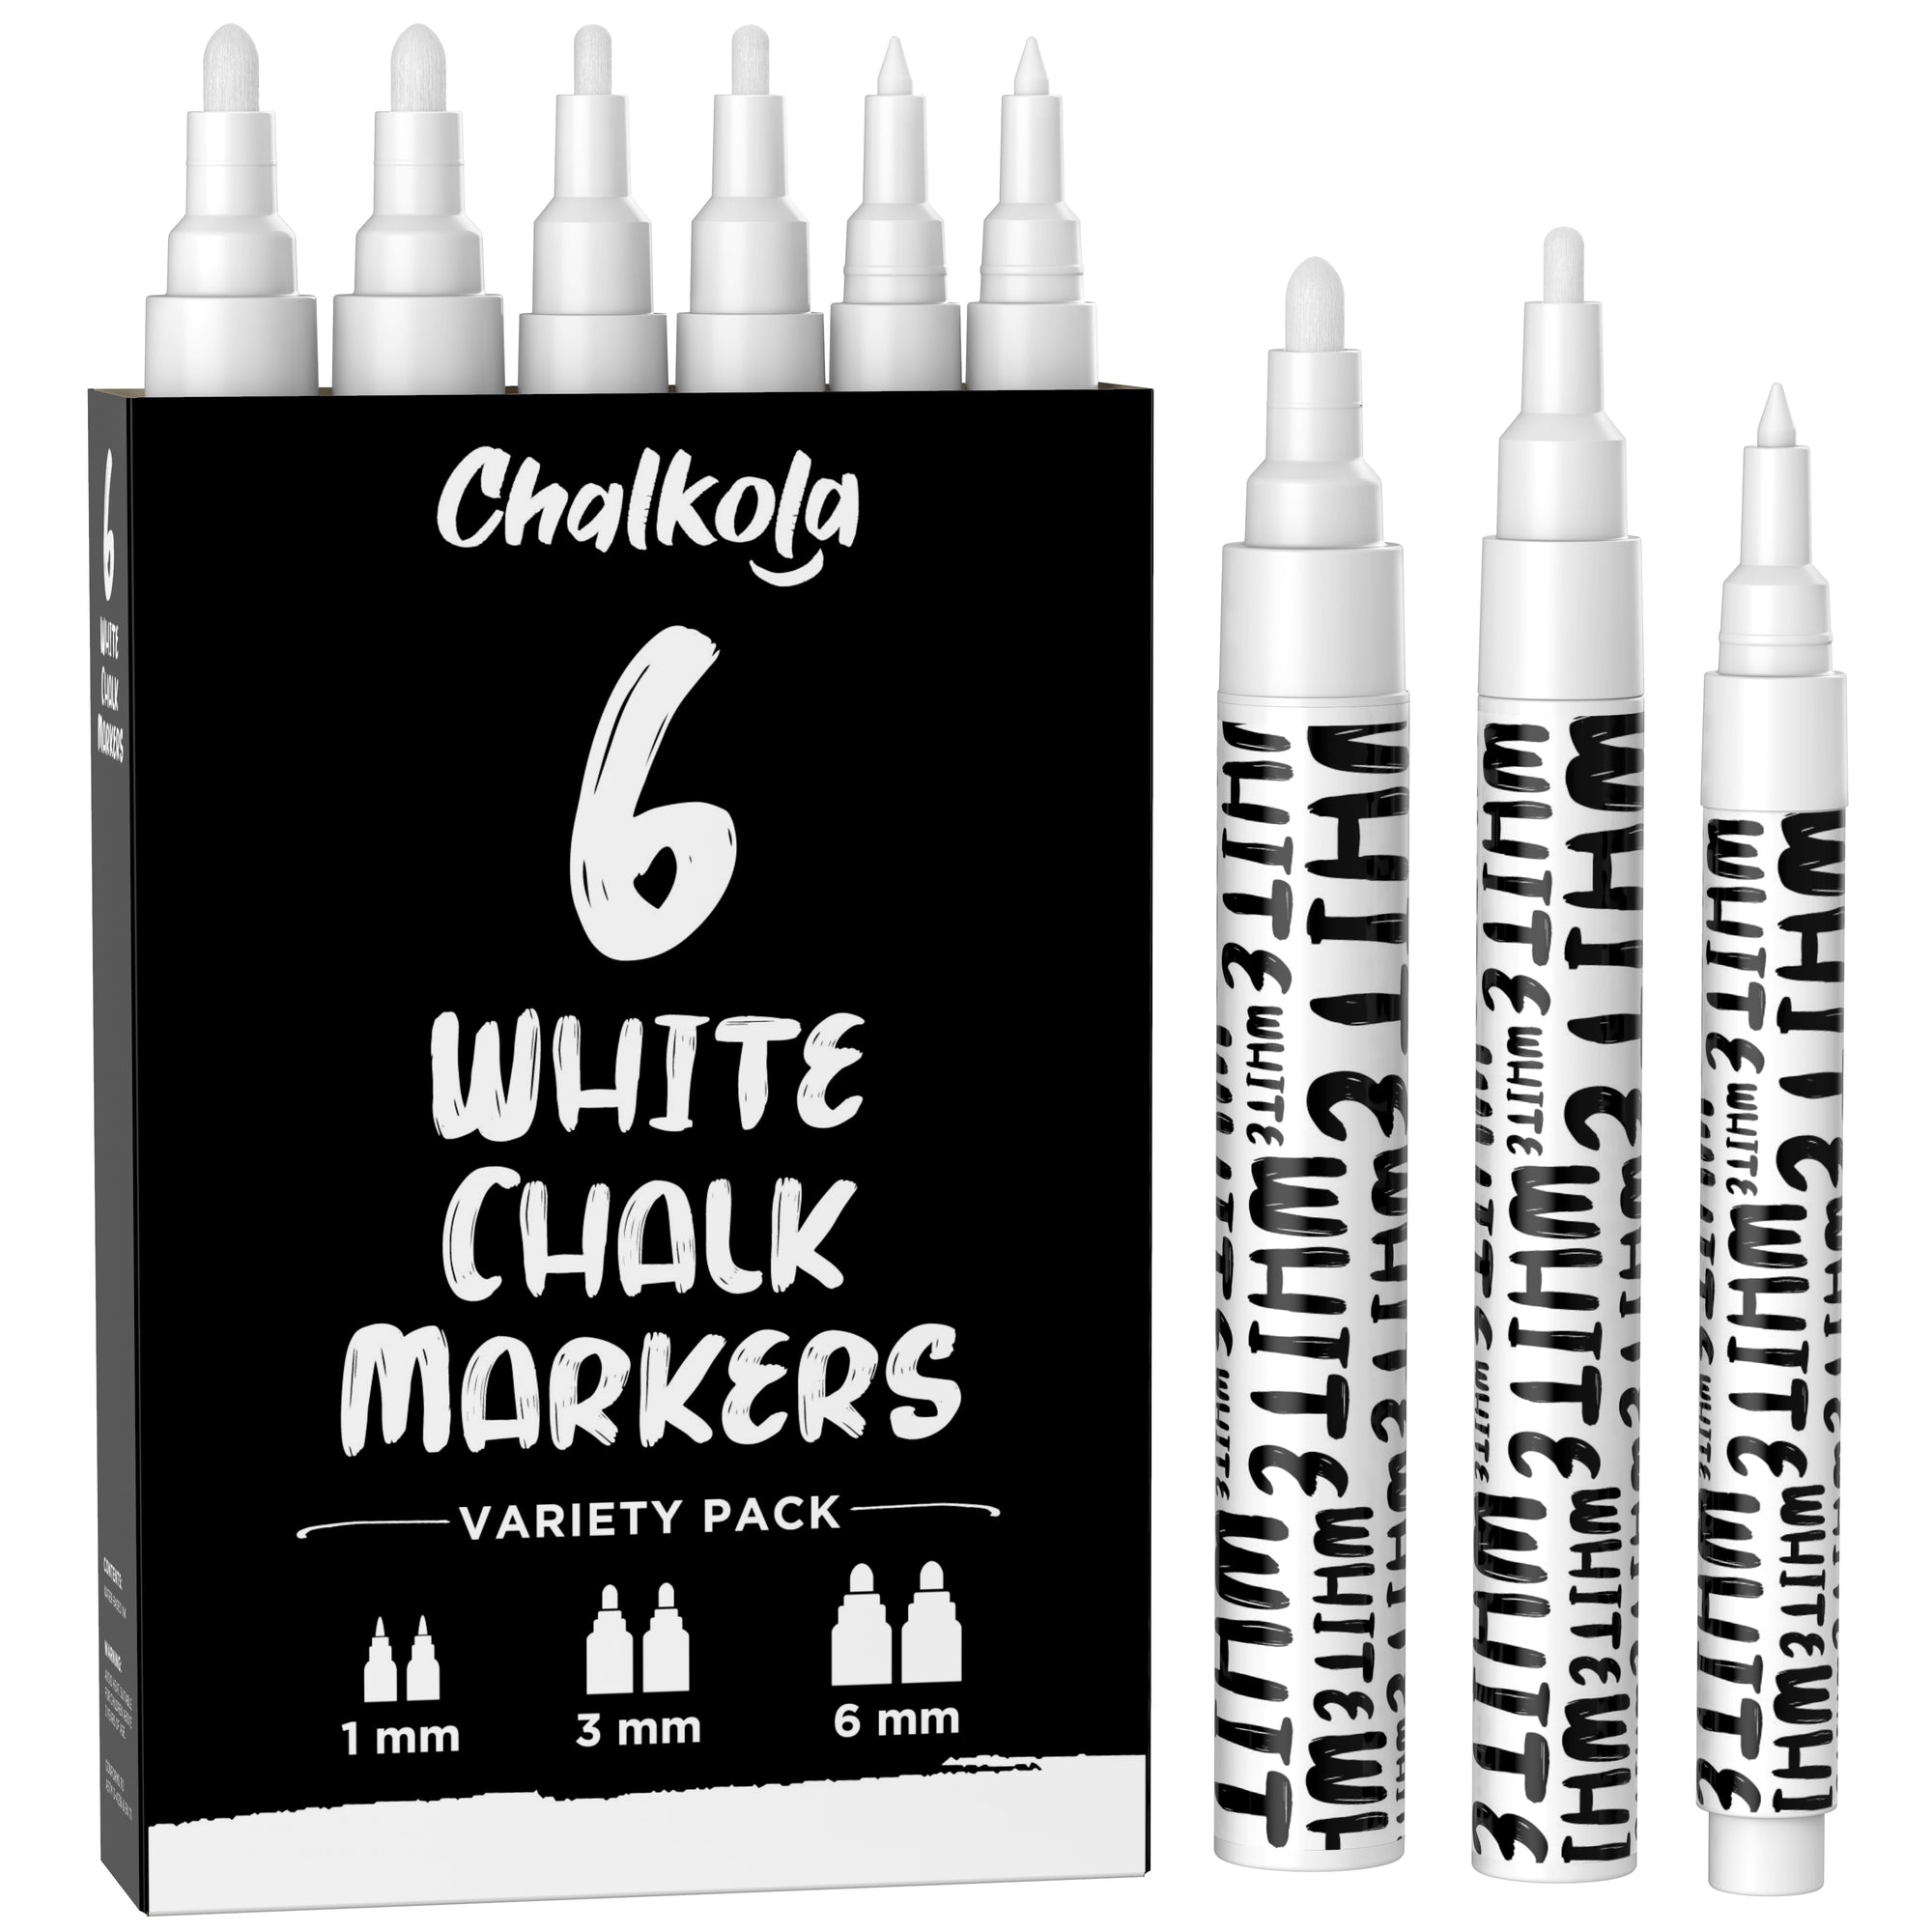 Versachalk  Pastel Liquid Chalk Markers – VersaChalk